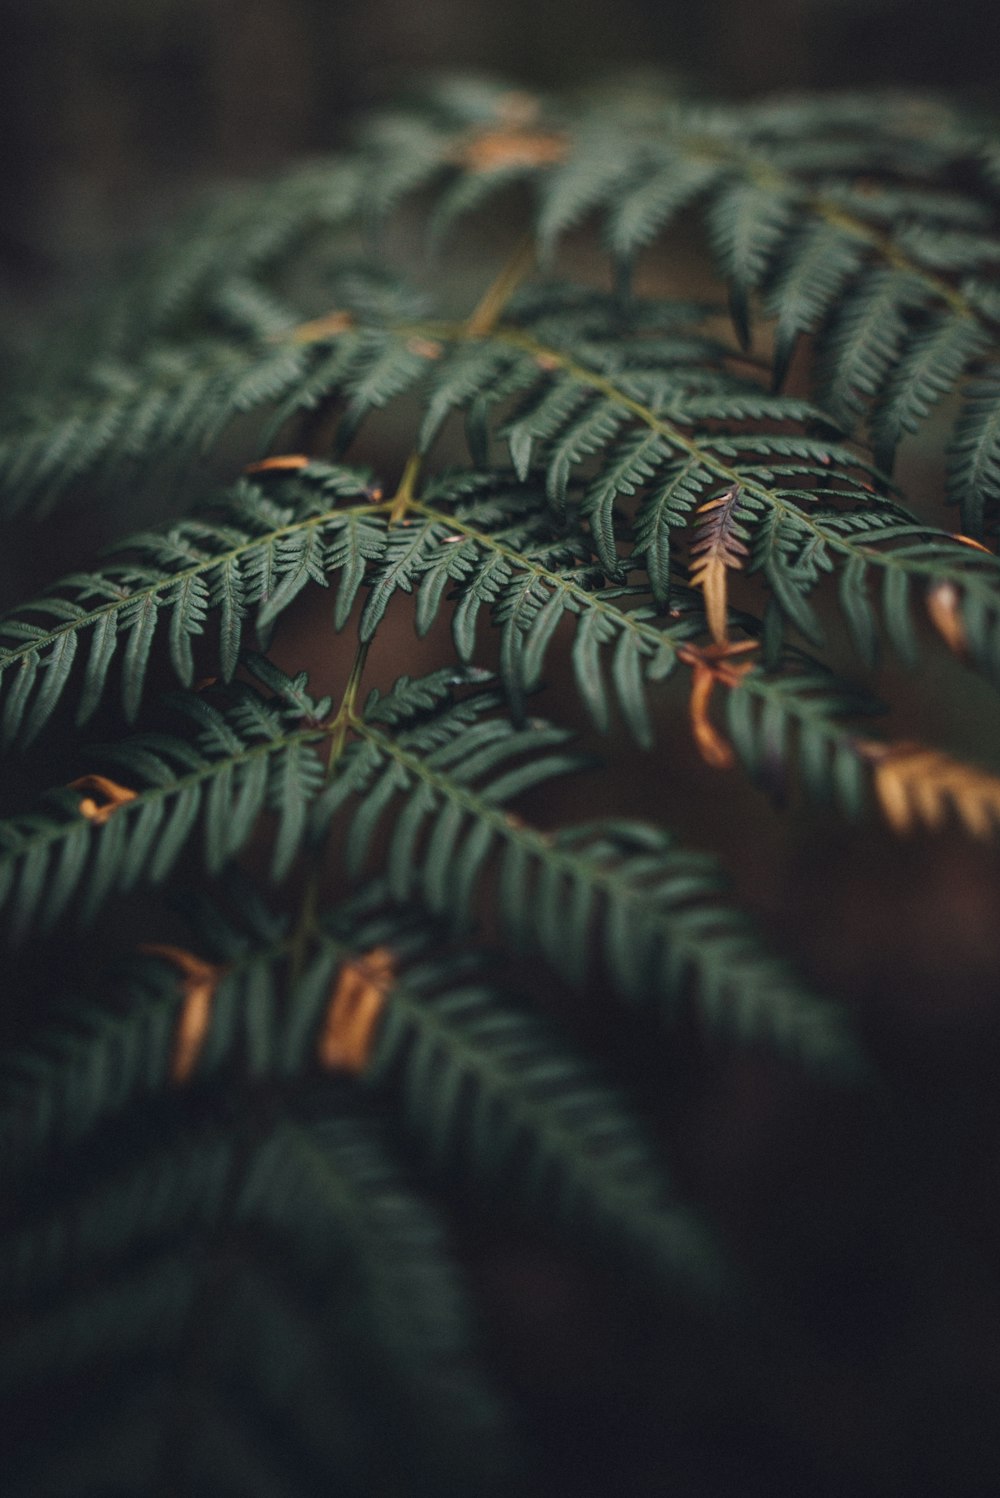 녹색 잎의 얕은 초점 사진